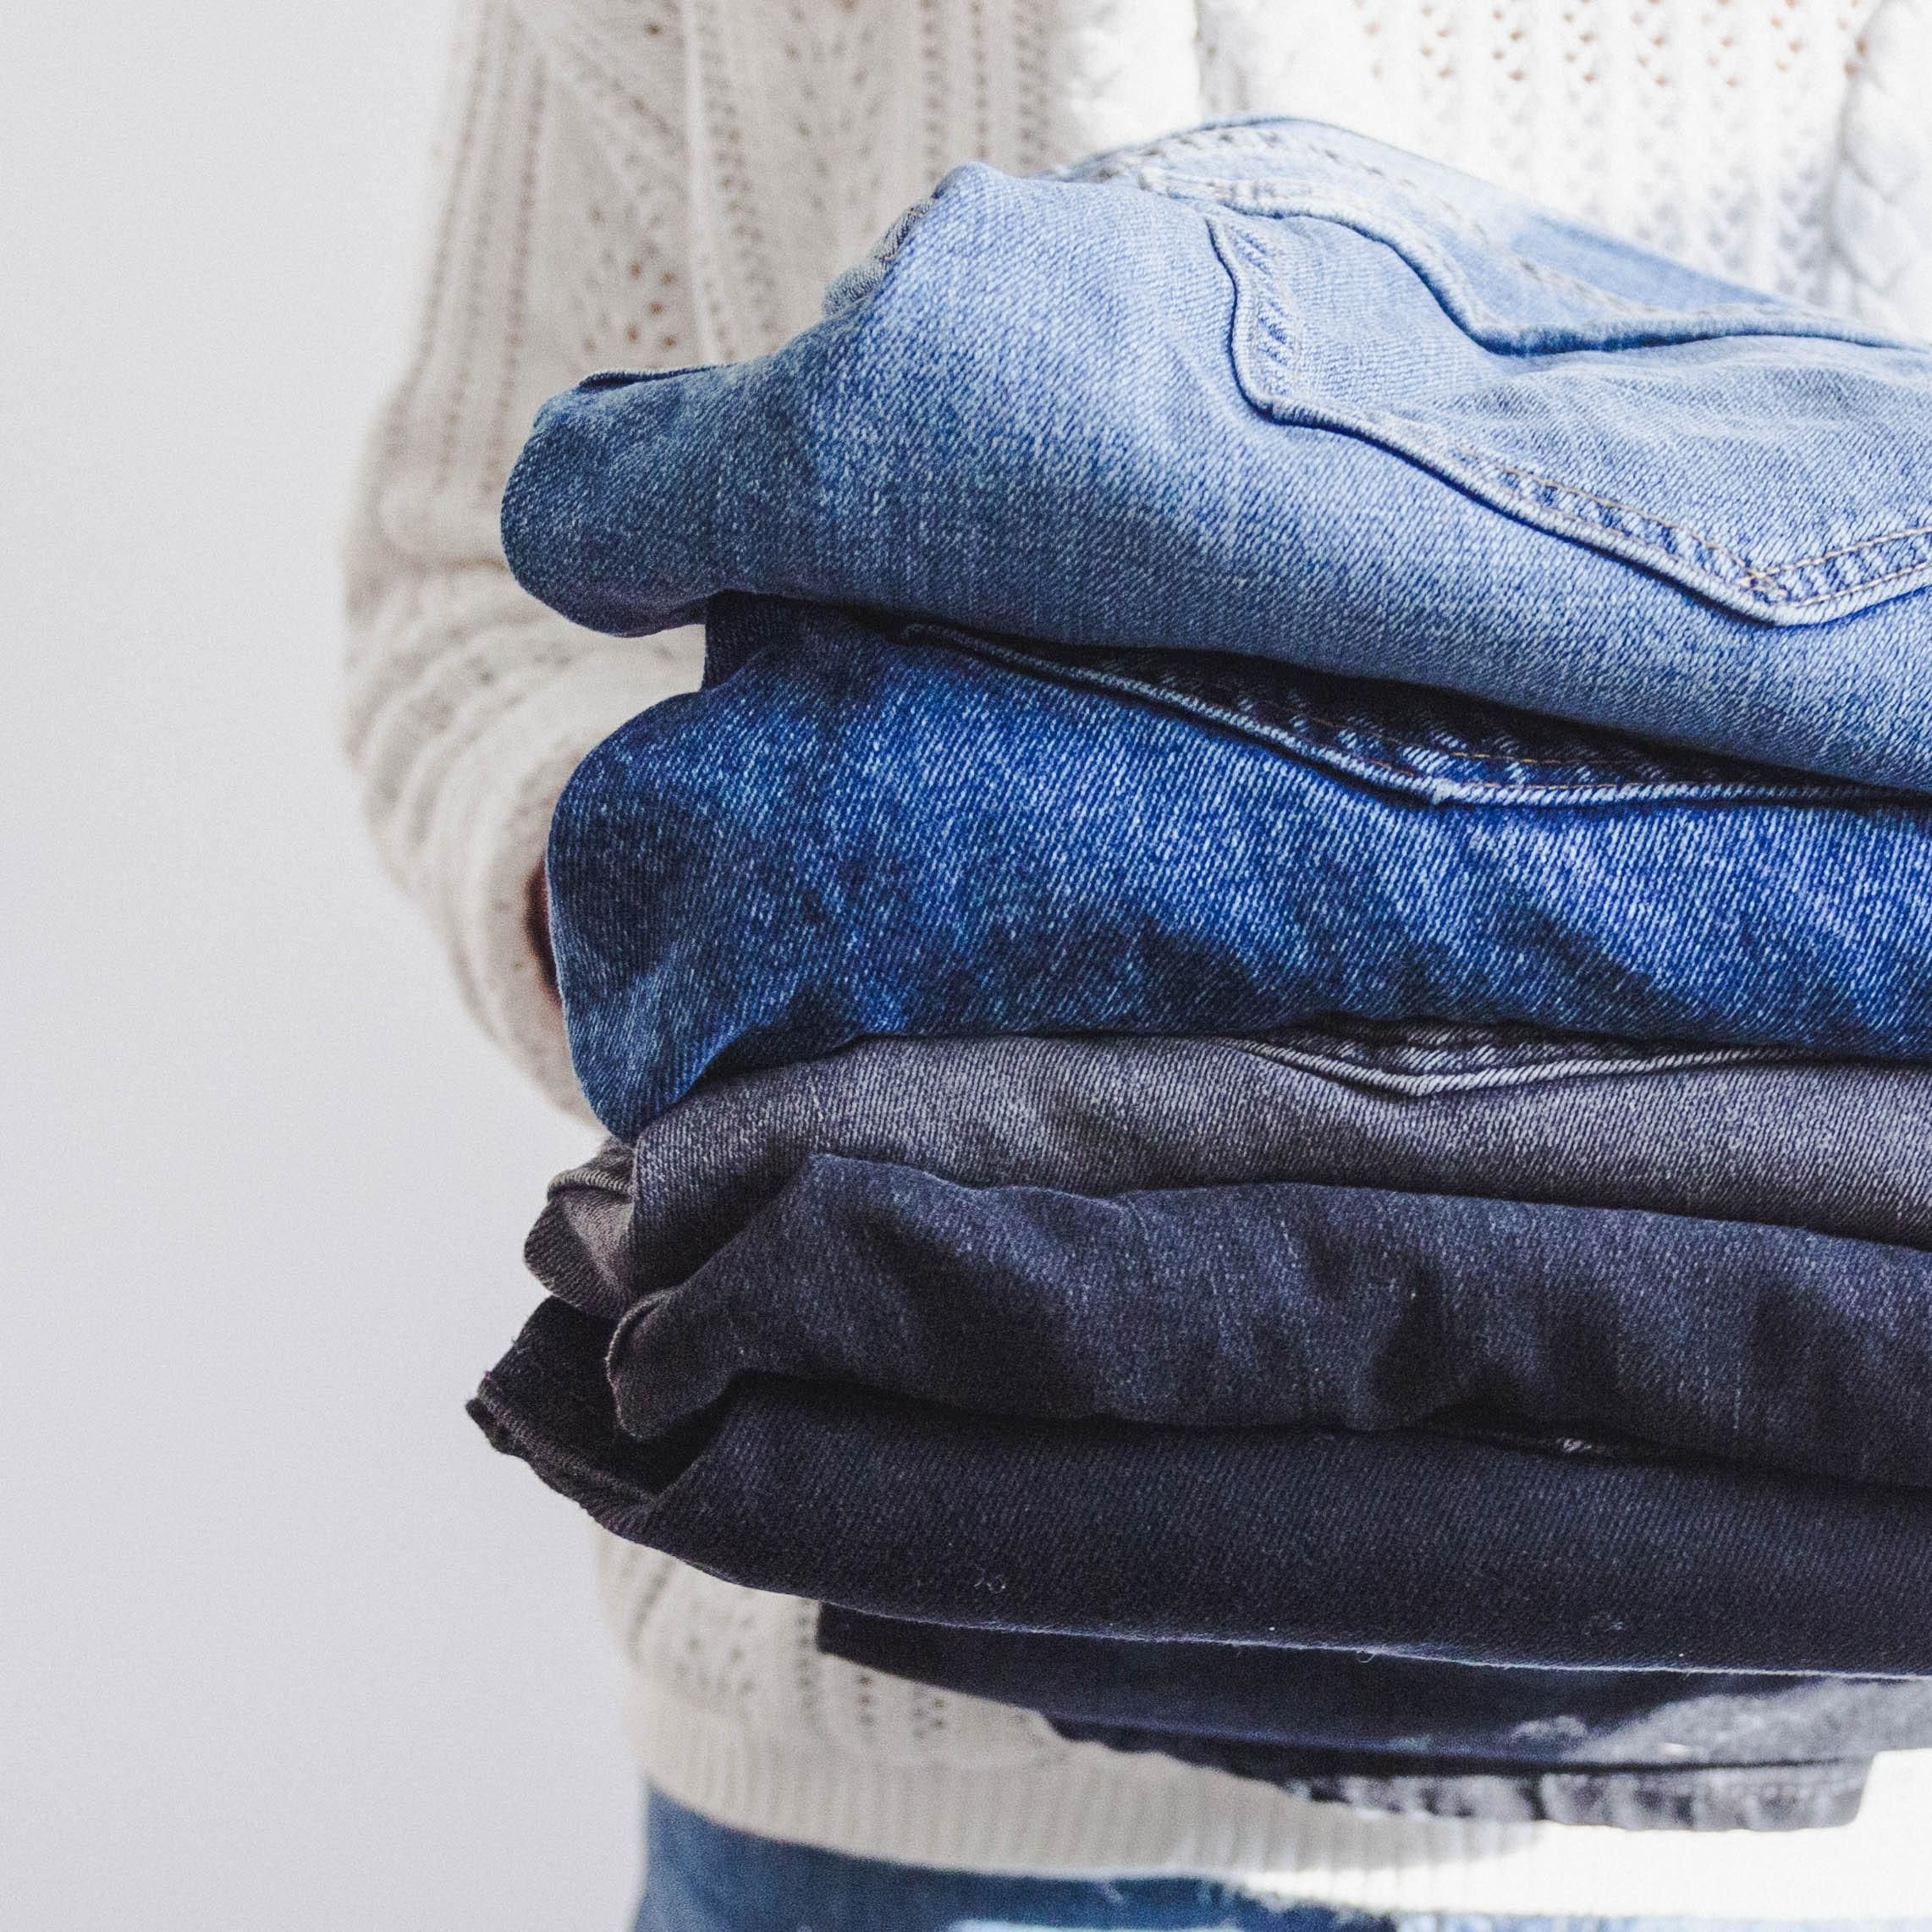 Як скласти одяг, щоб заощадити місце в шафі: метод експертки - Ідеї